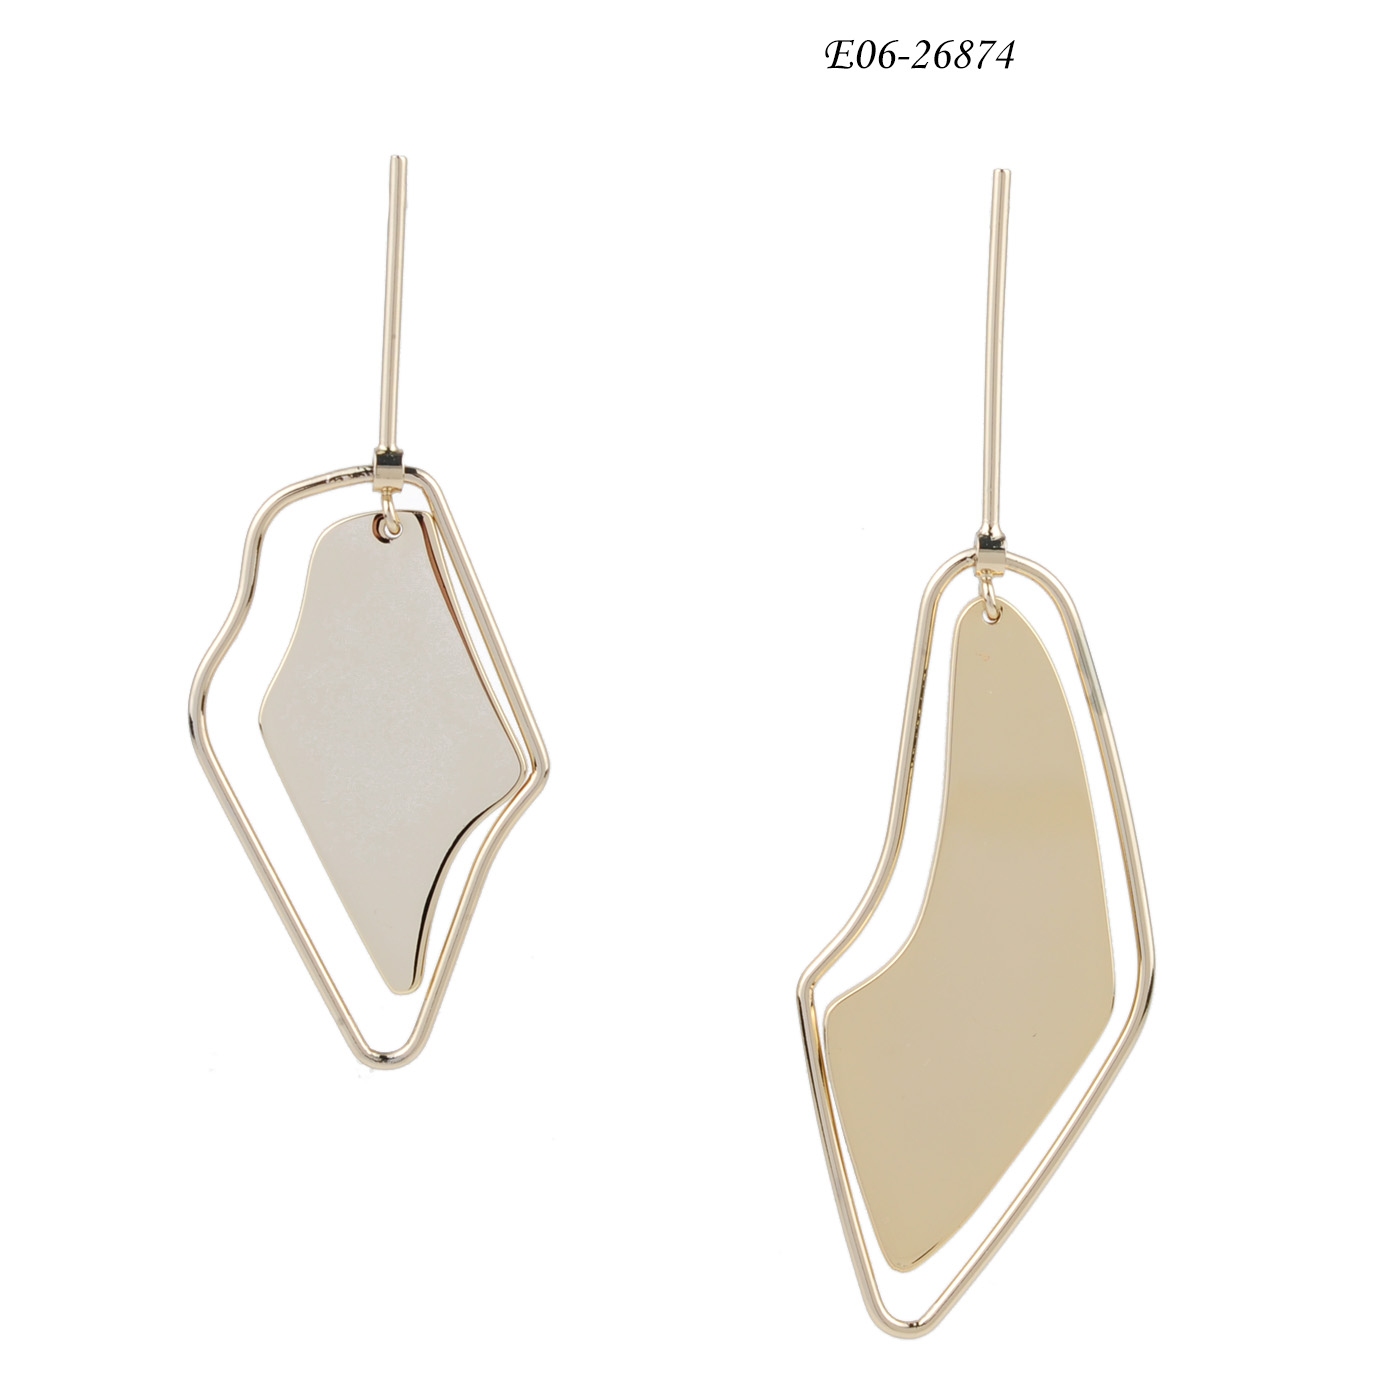 Dangle Drop E06-26874 chandelier earrings   crystal drop earrings